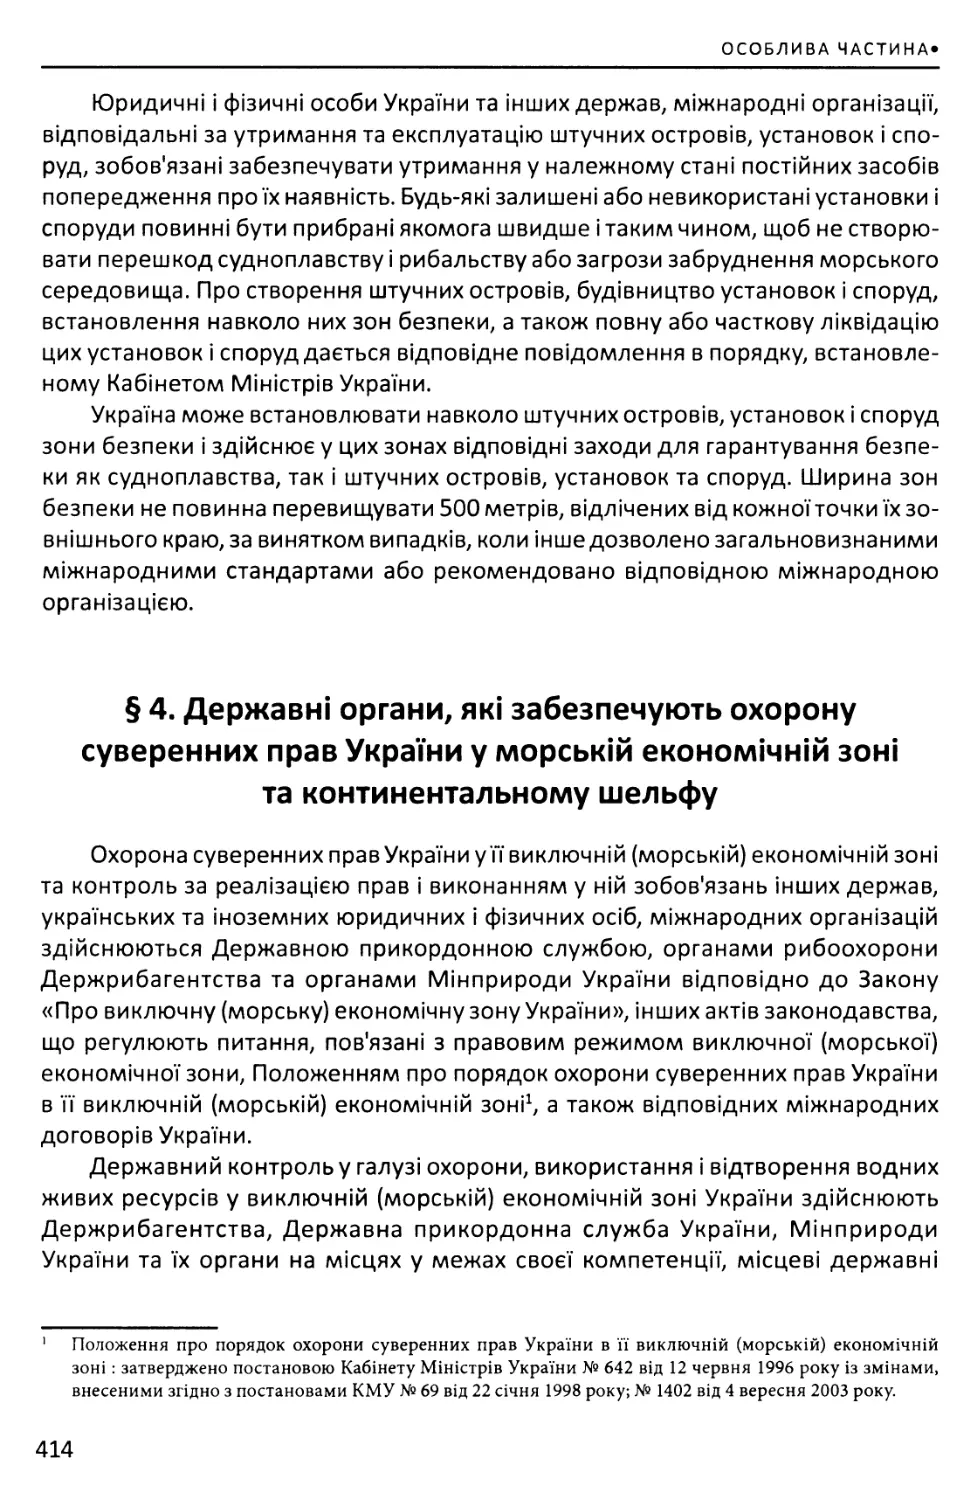 §4. Державні органи, які забезпечують охорону суверенних прав України у морській економічній зоні та континентальному шельфу